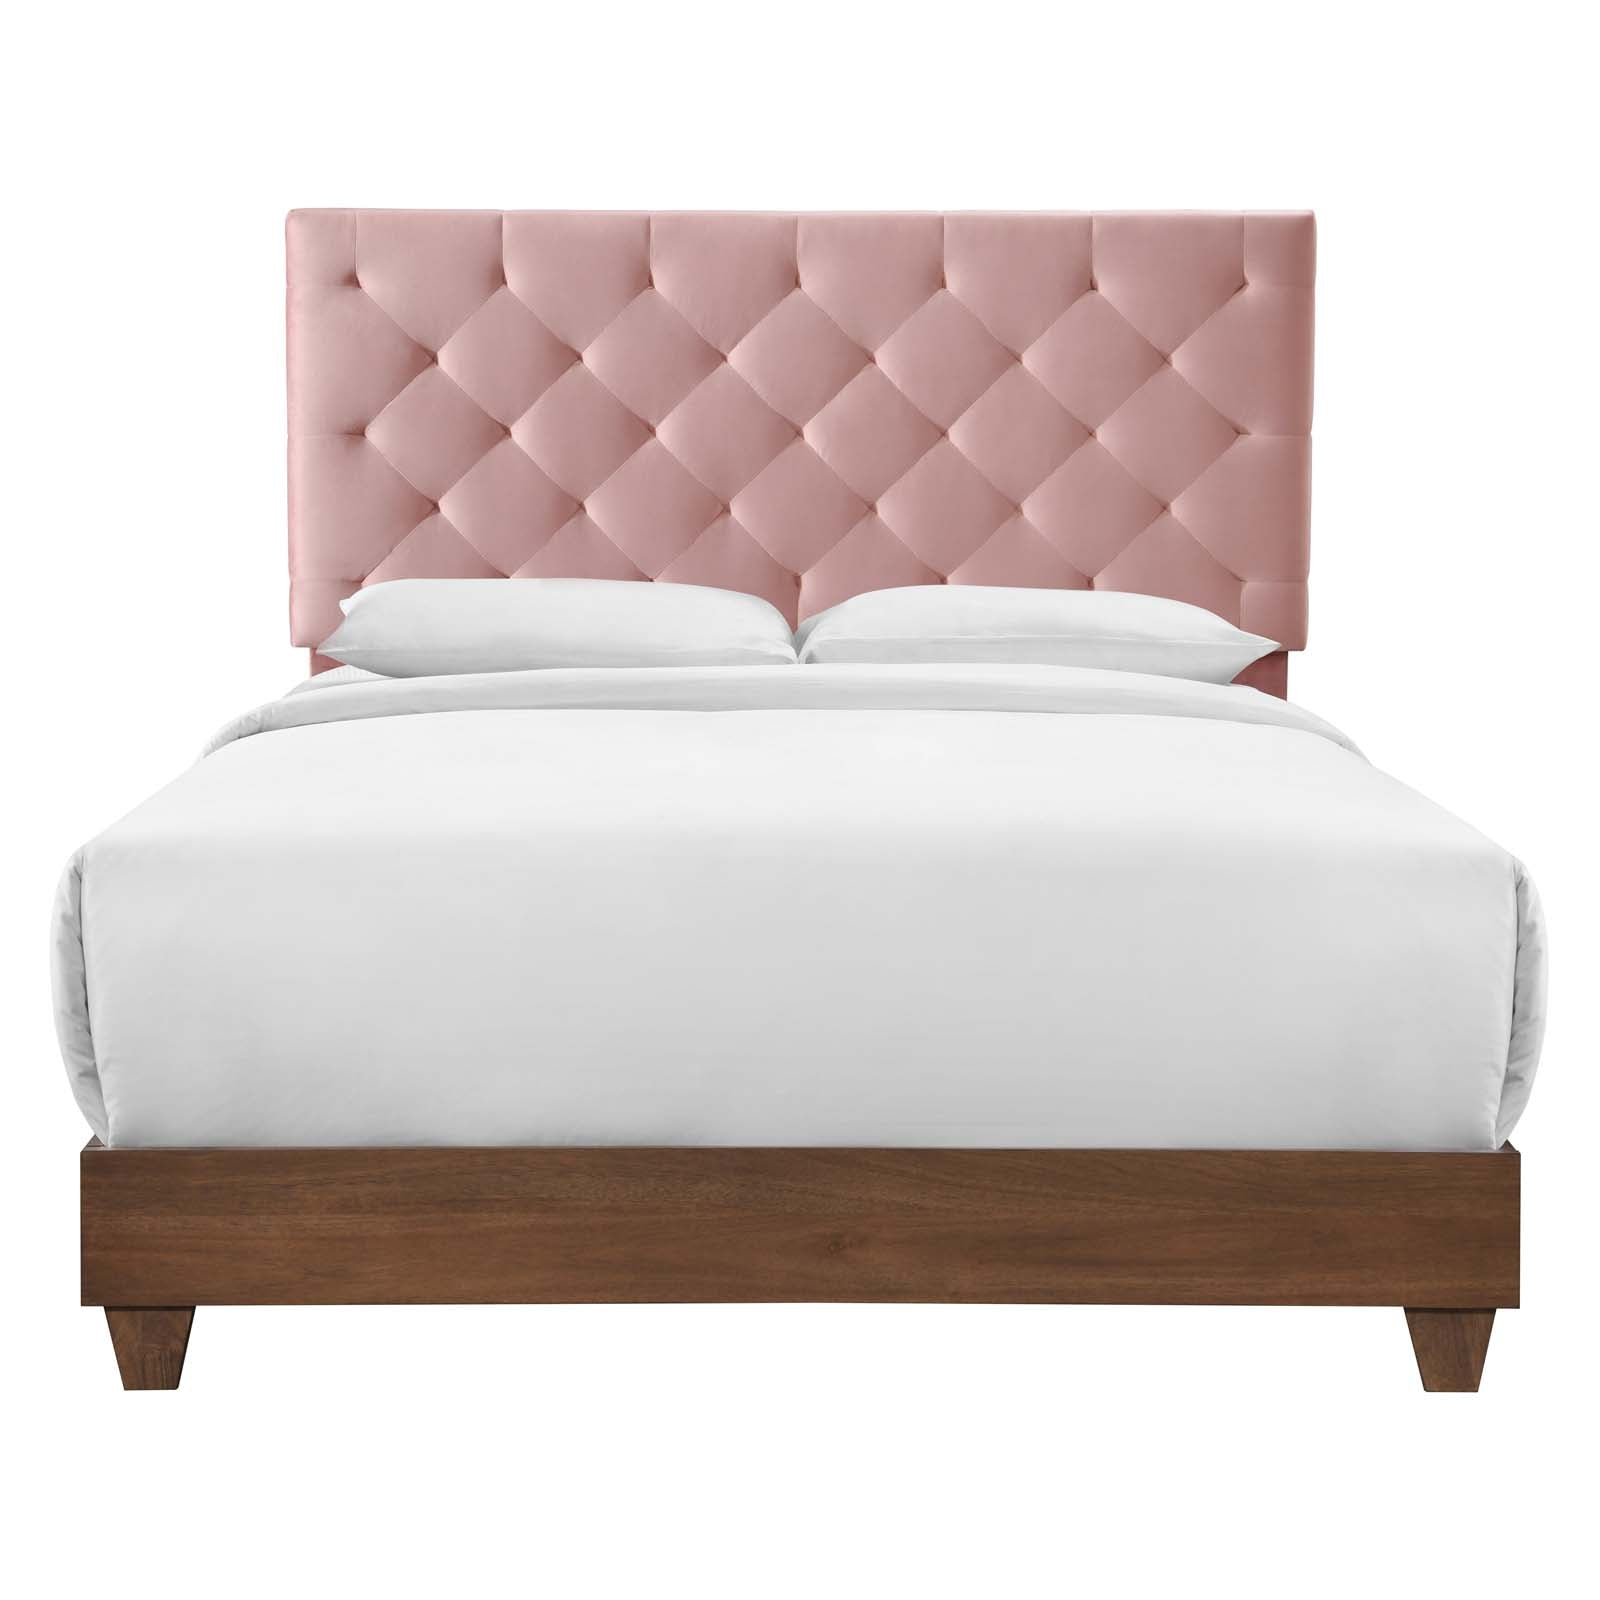 Modway Beds - Rhiannon Velvet Queen Bed Walnut & Dusty Rose